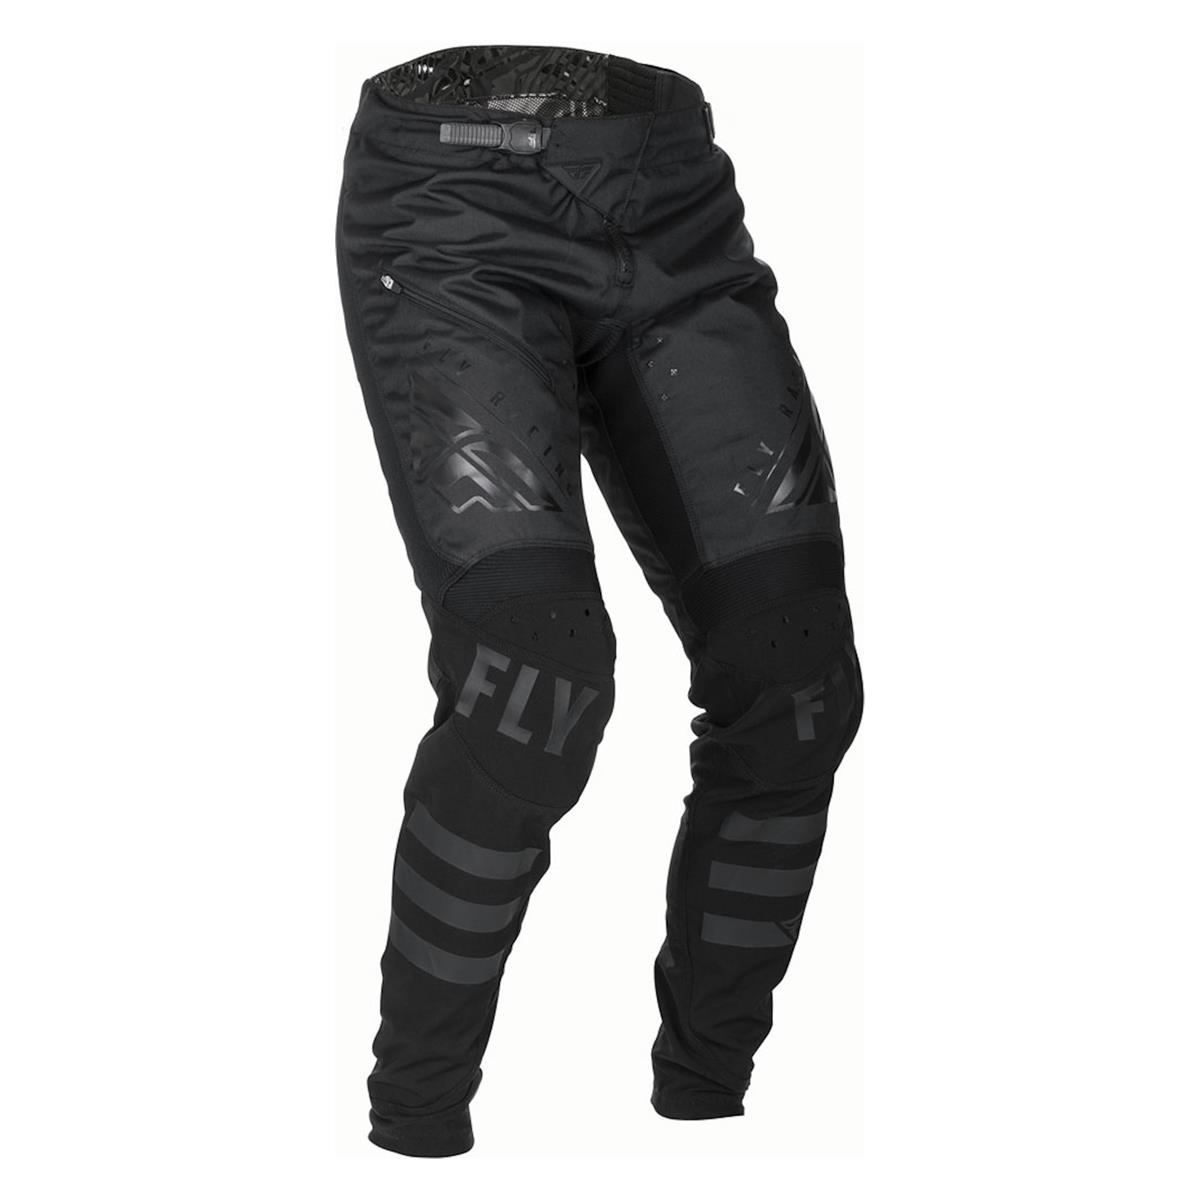 black bike pants